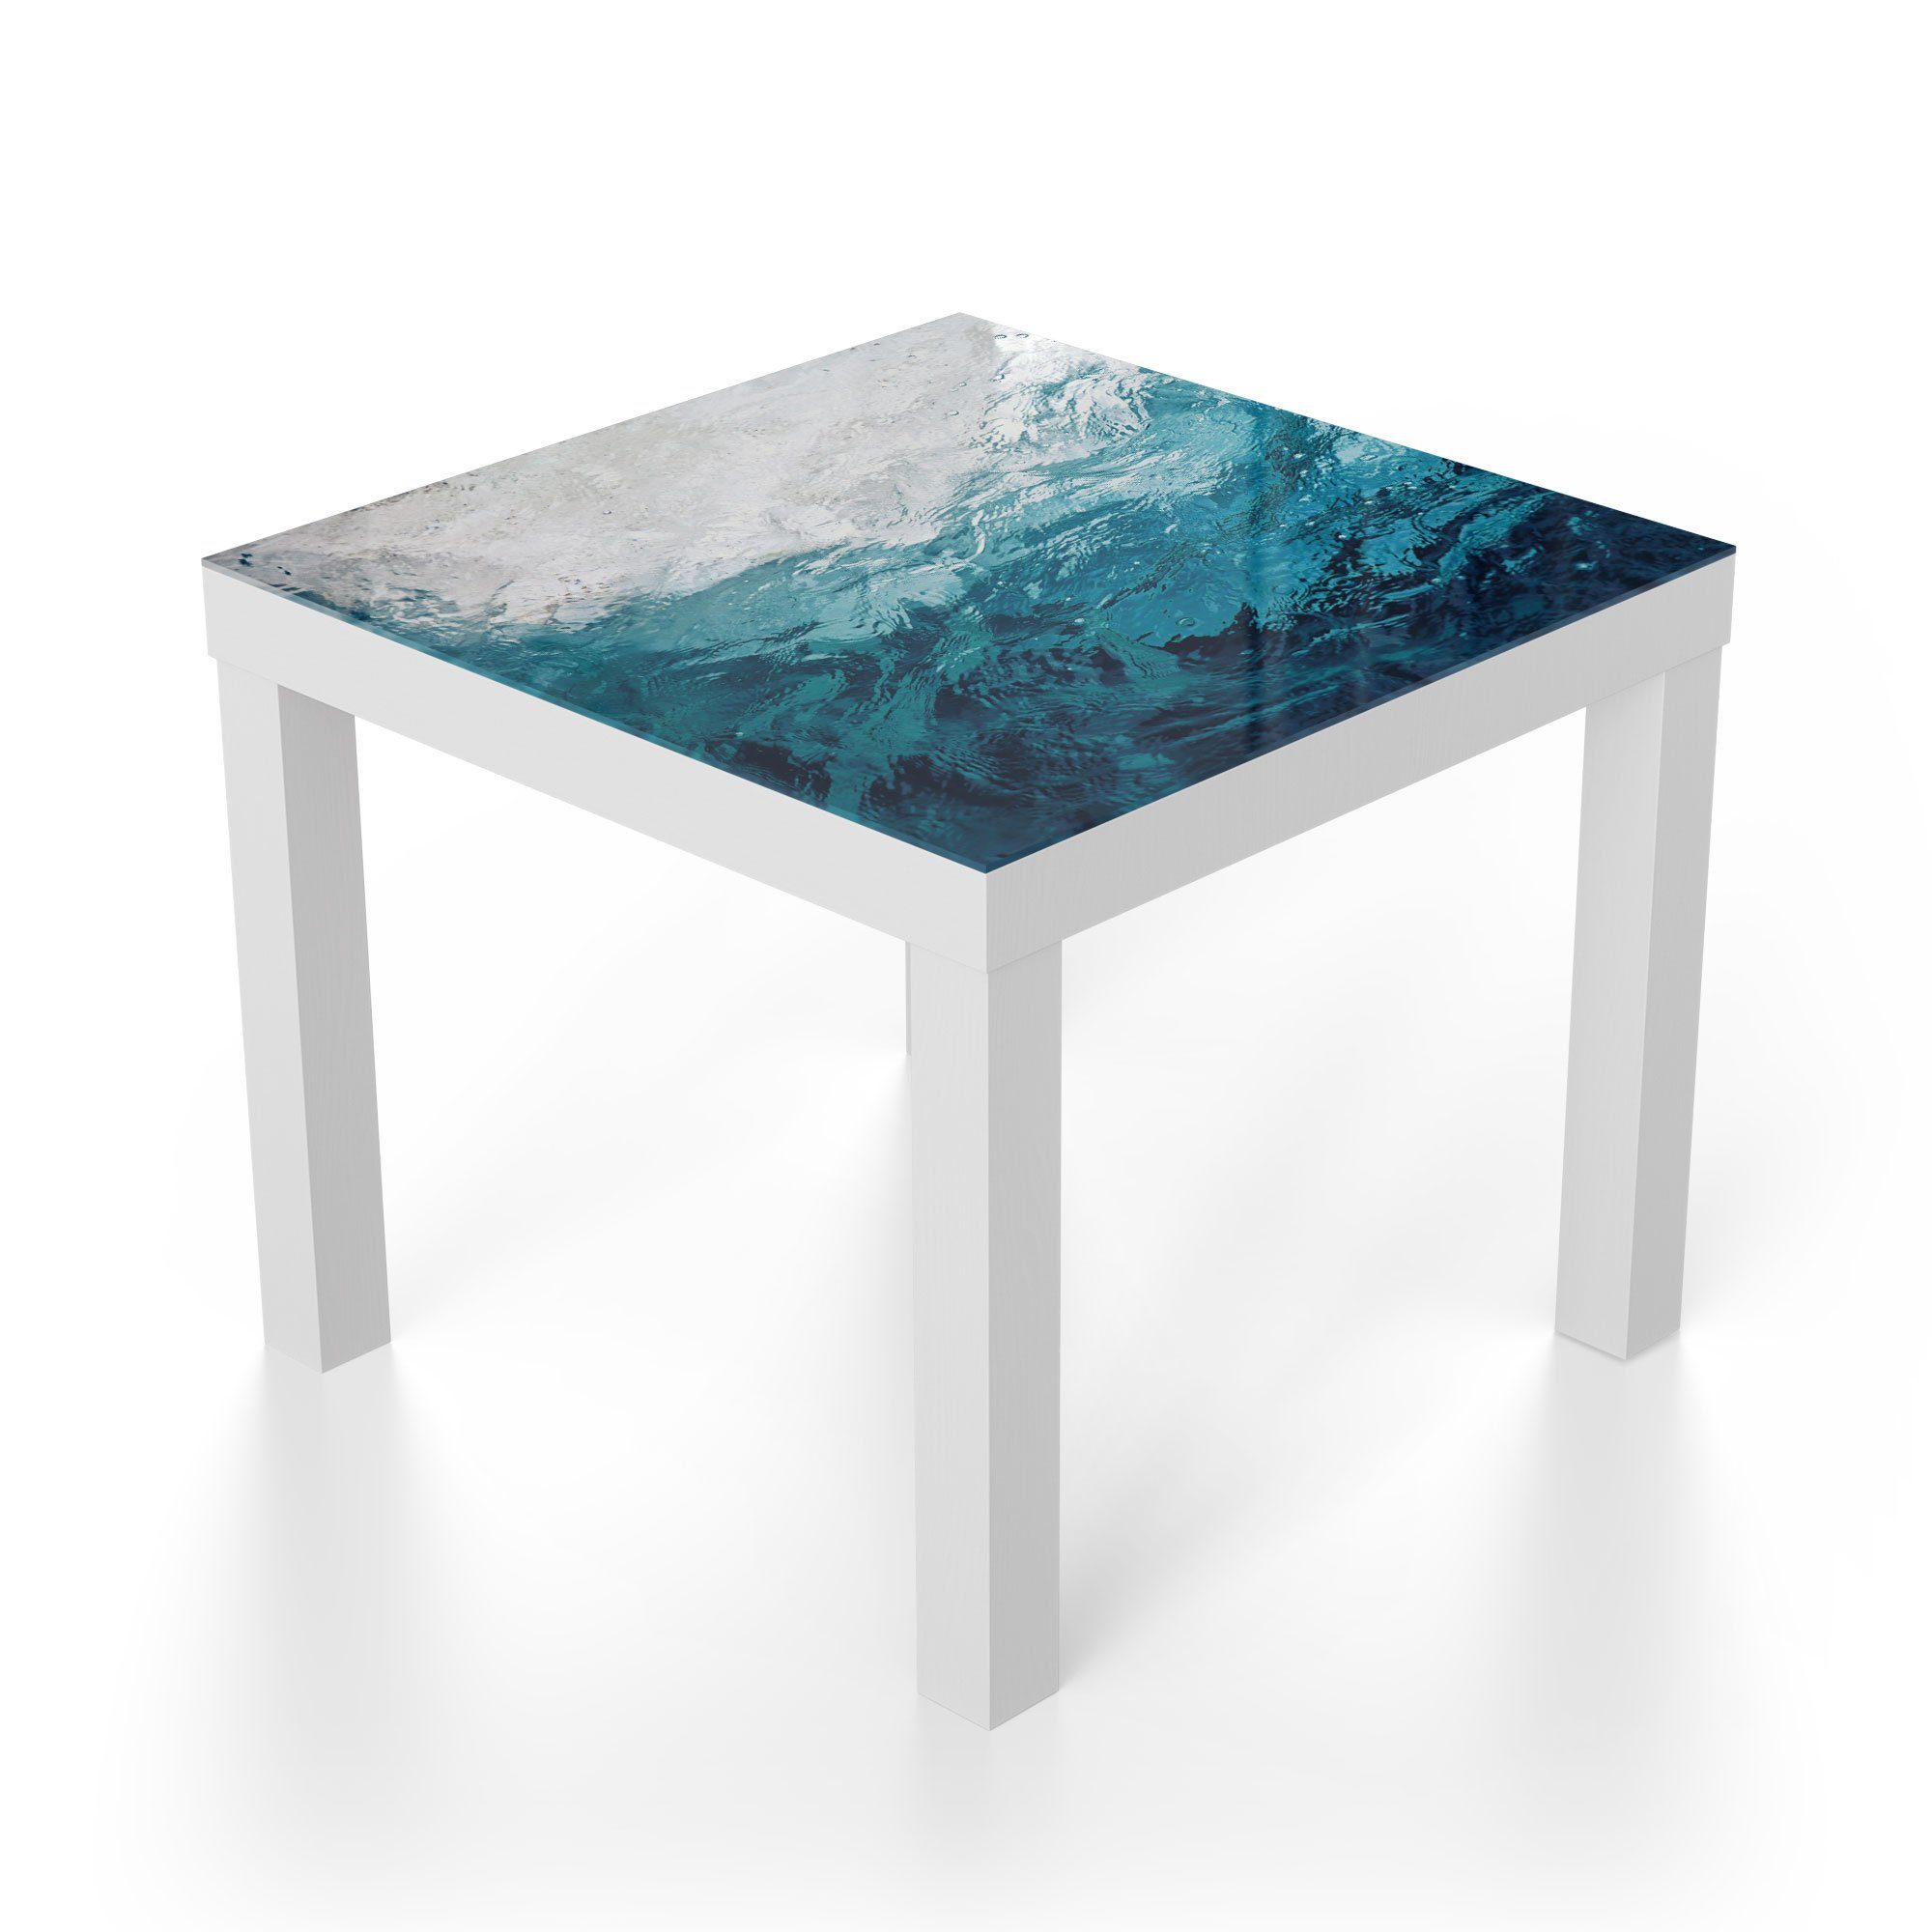 DEQORI Couchtisch Weiß Glas Beistelltisch modern Wellen', Glastisch 'Blick durch